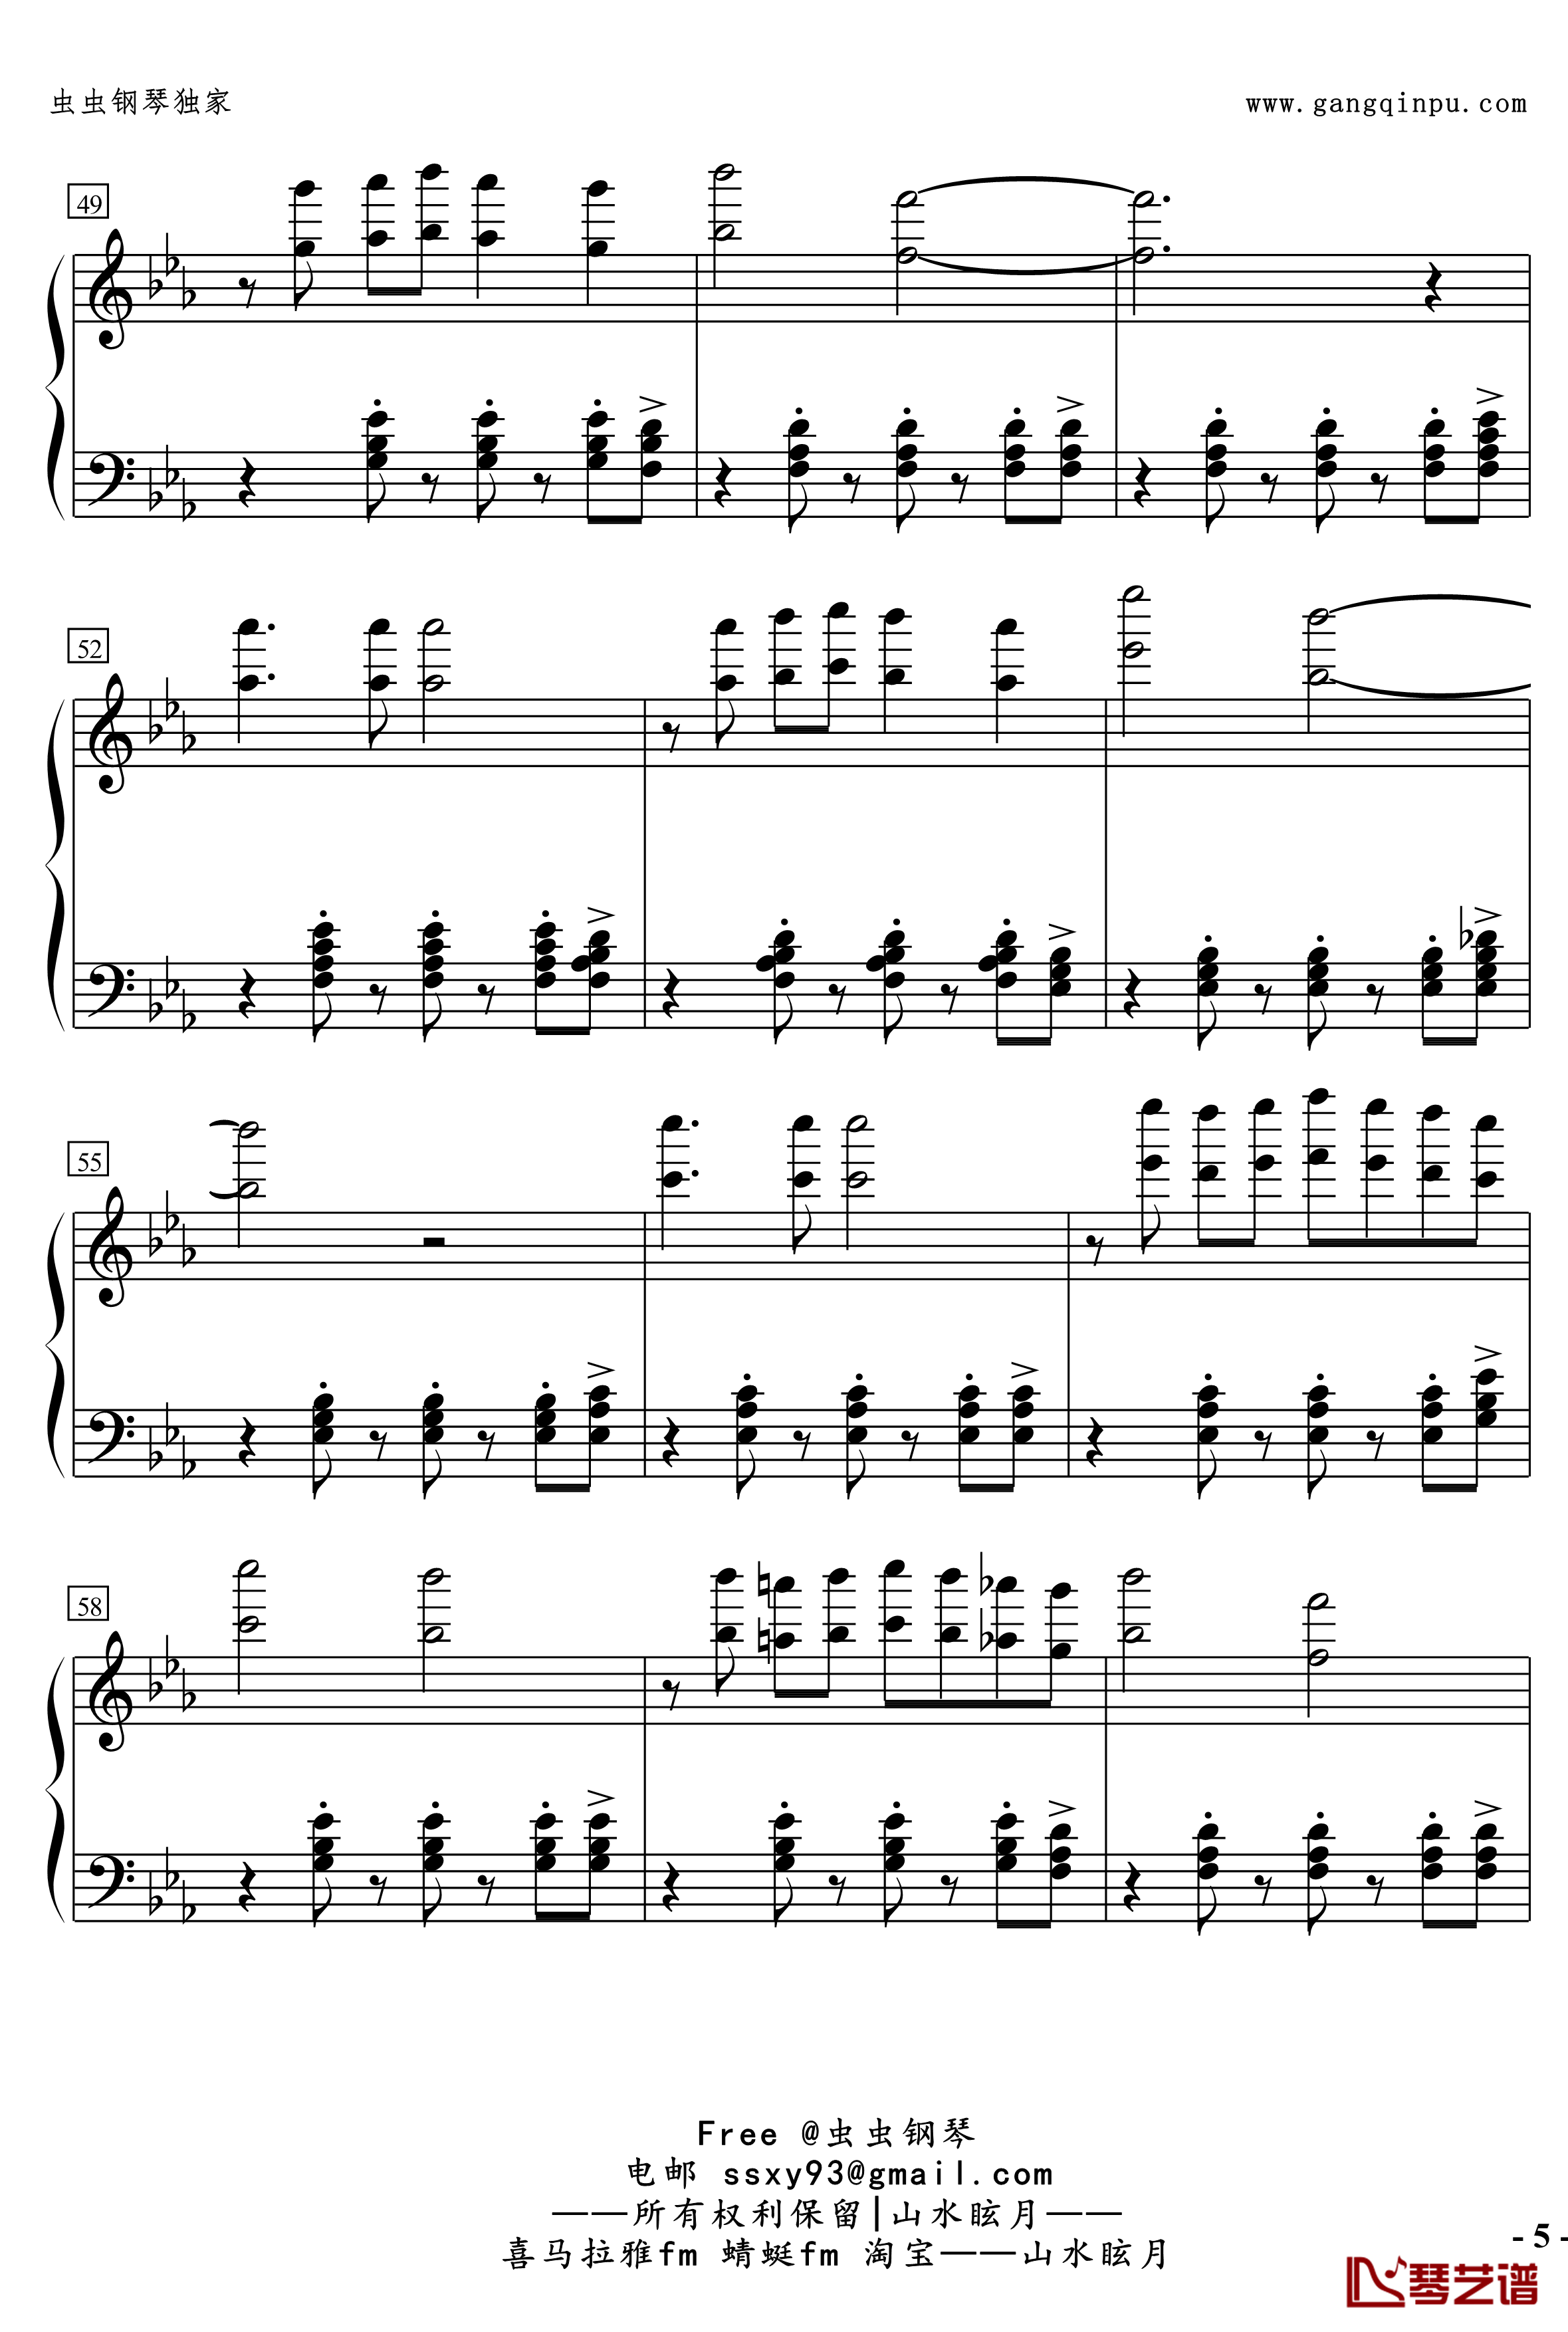 No.2無名探戈钢琴谱-修订-jerry5743